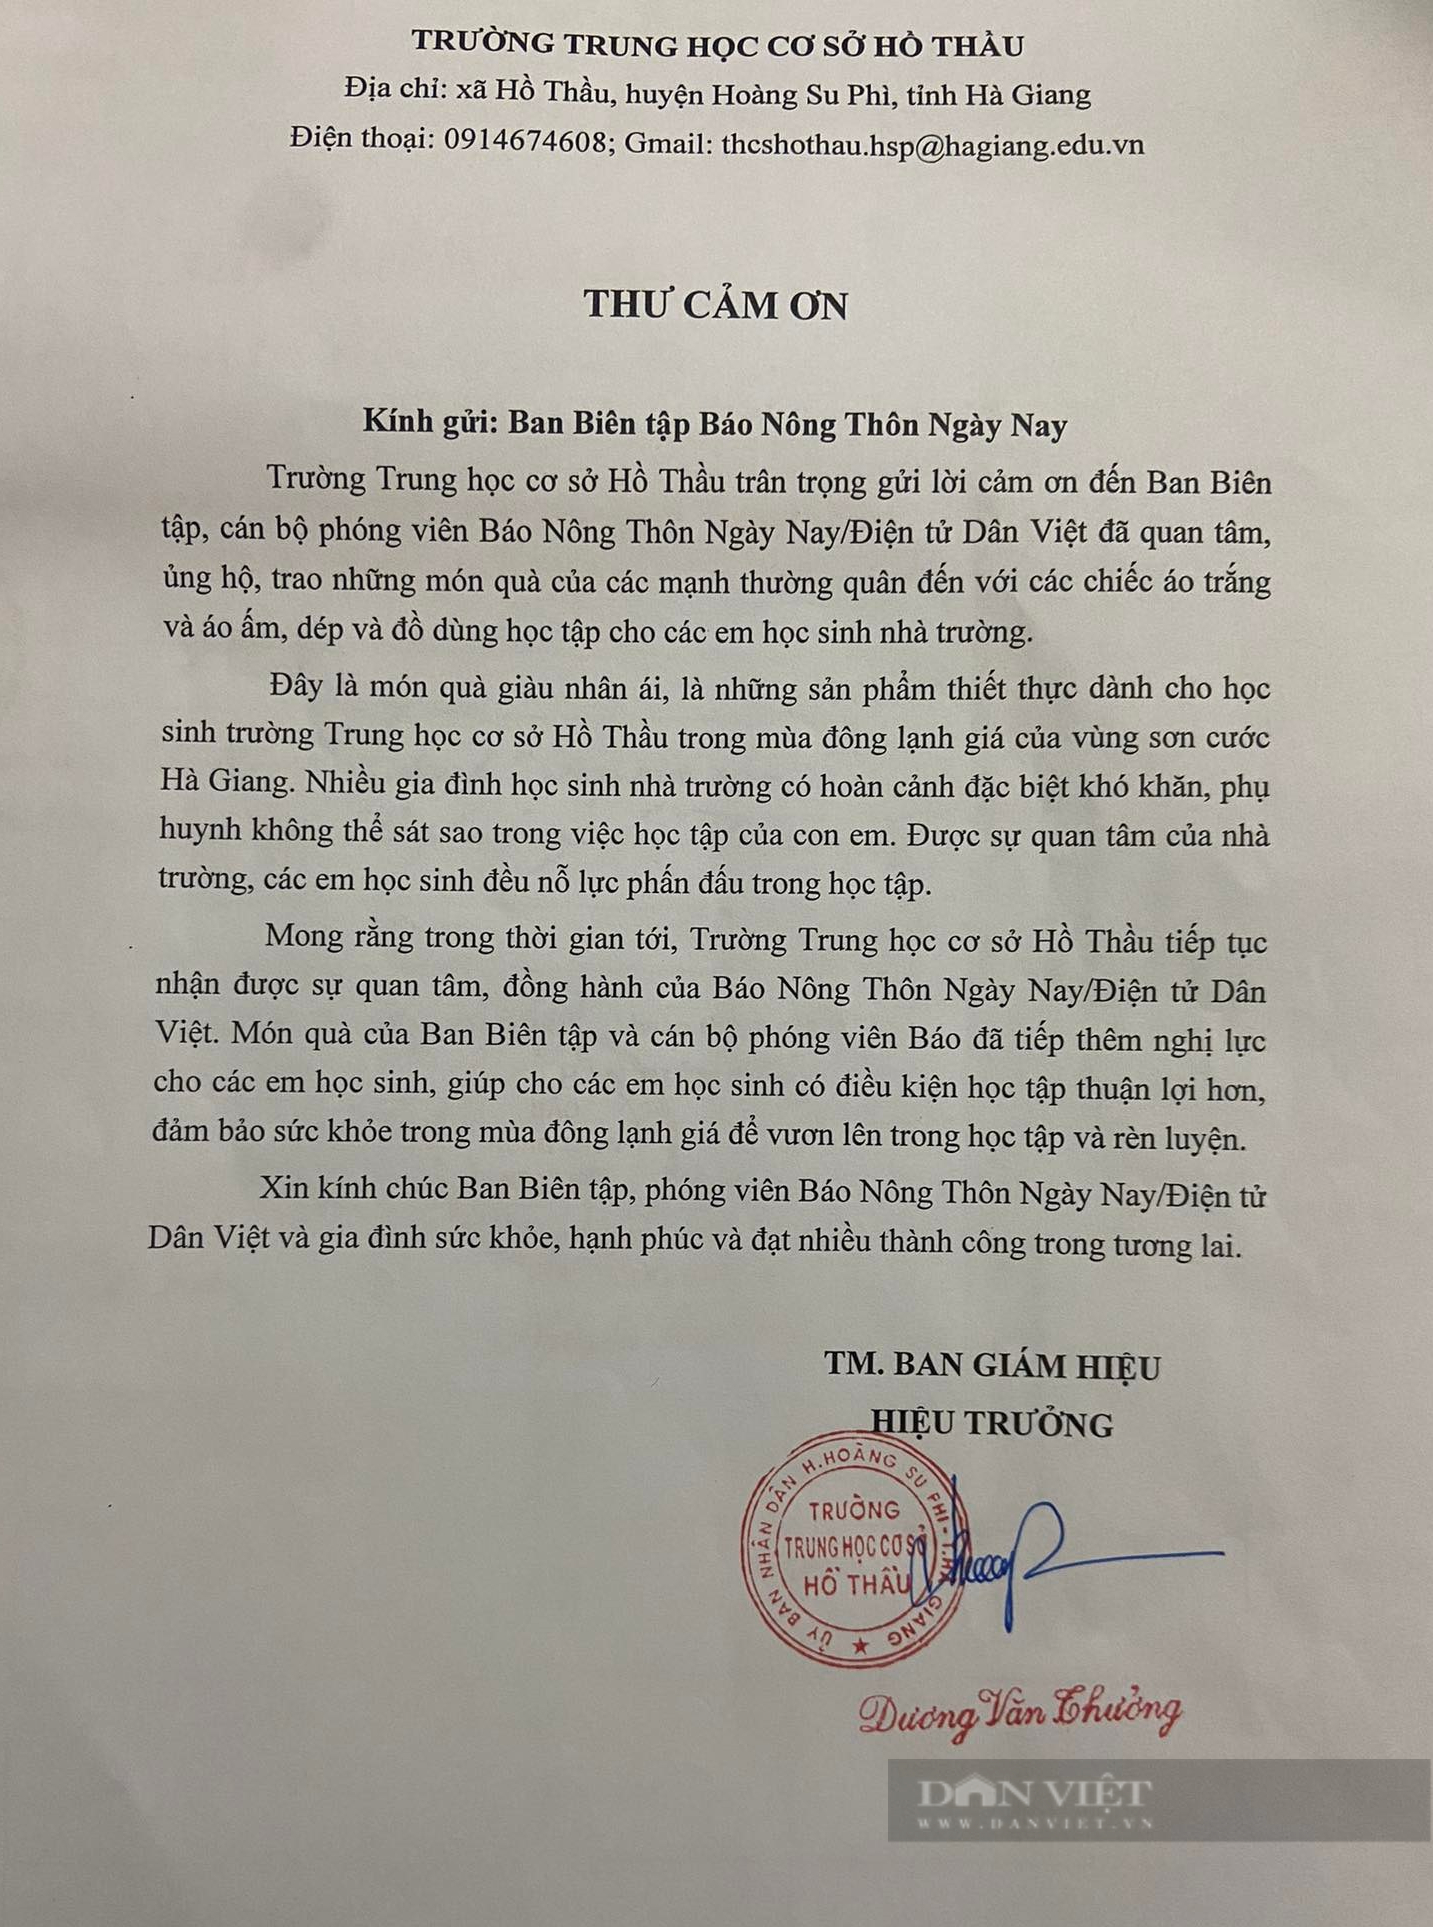 Trường THCS Hồ Thầu gửi thư cảm ơn Báo NTNN/Điện tử Dân Việt - Ảnh 3.